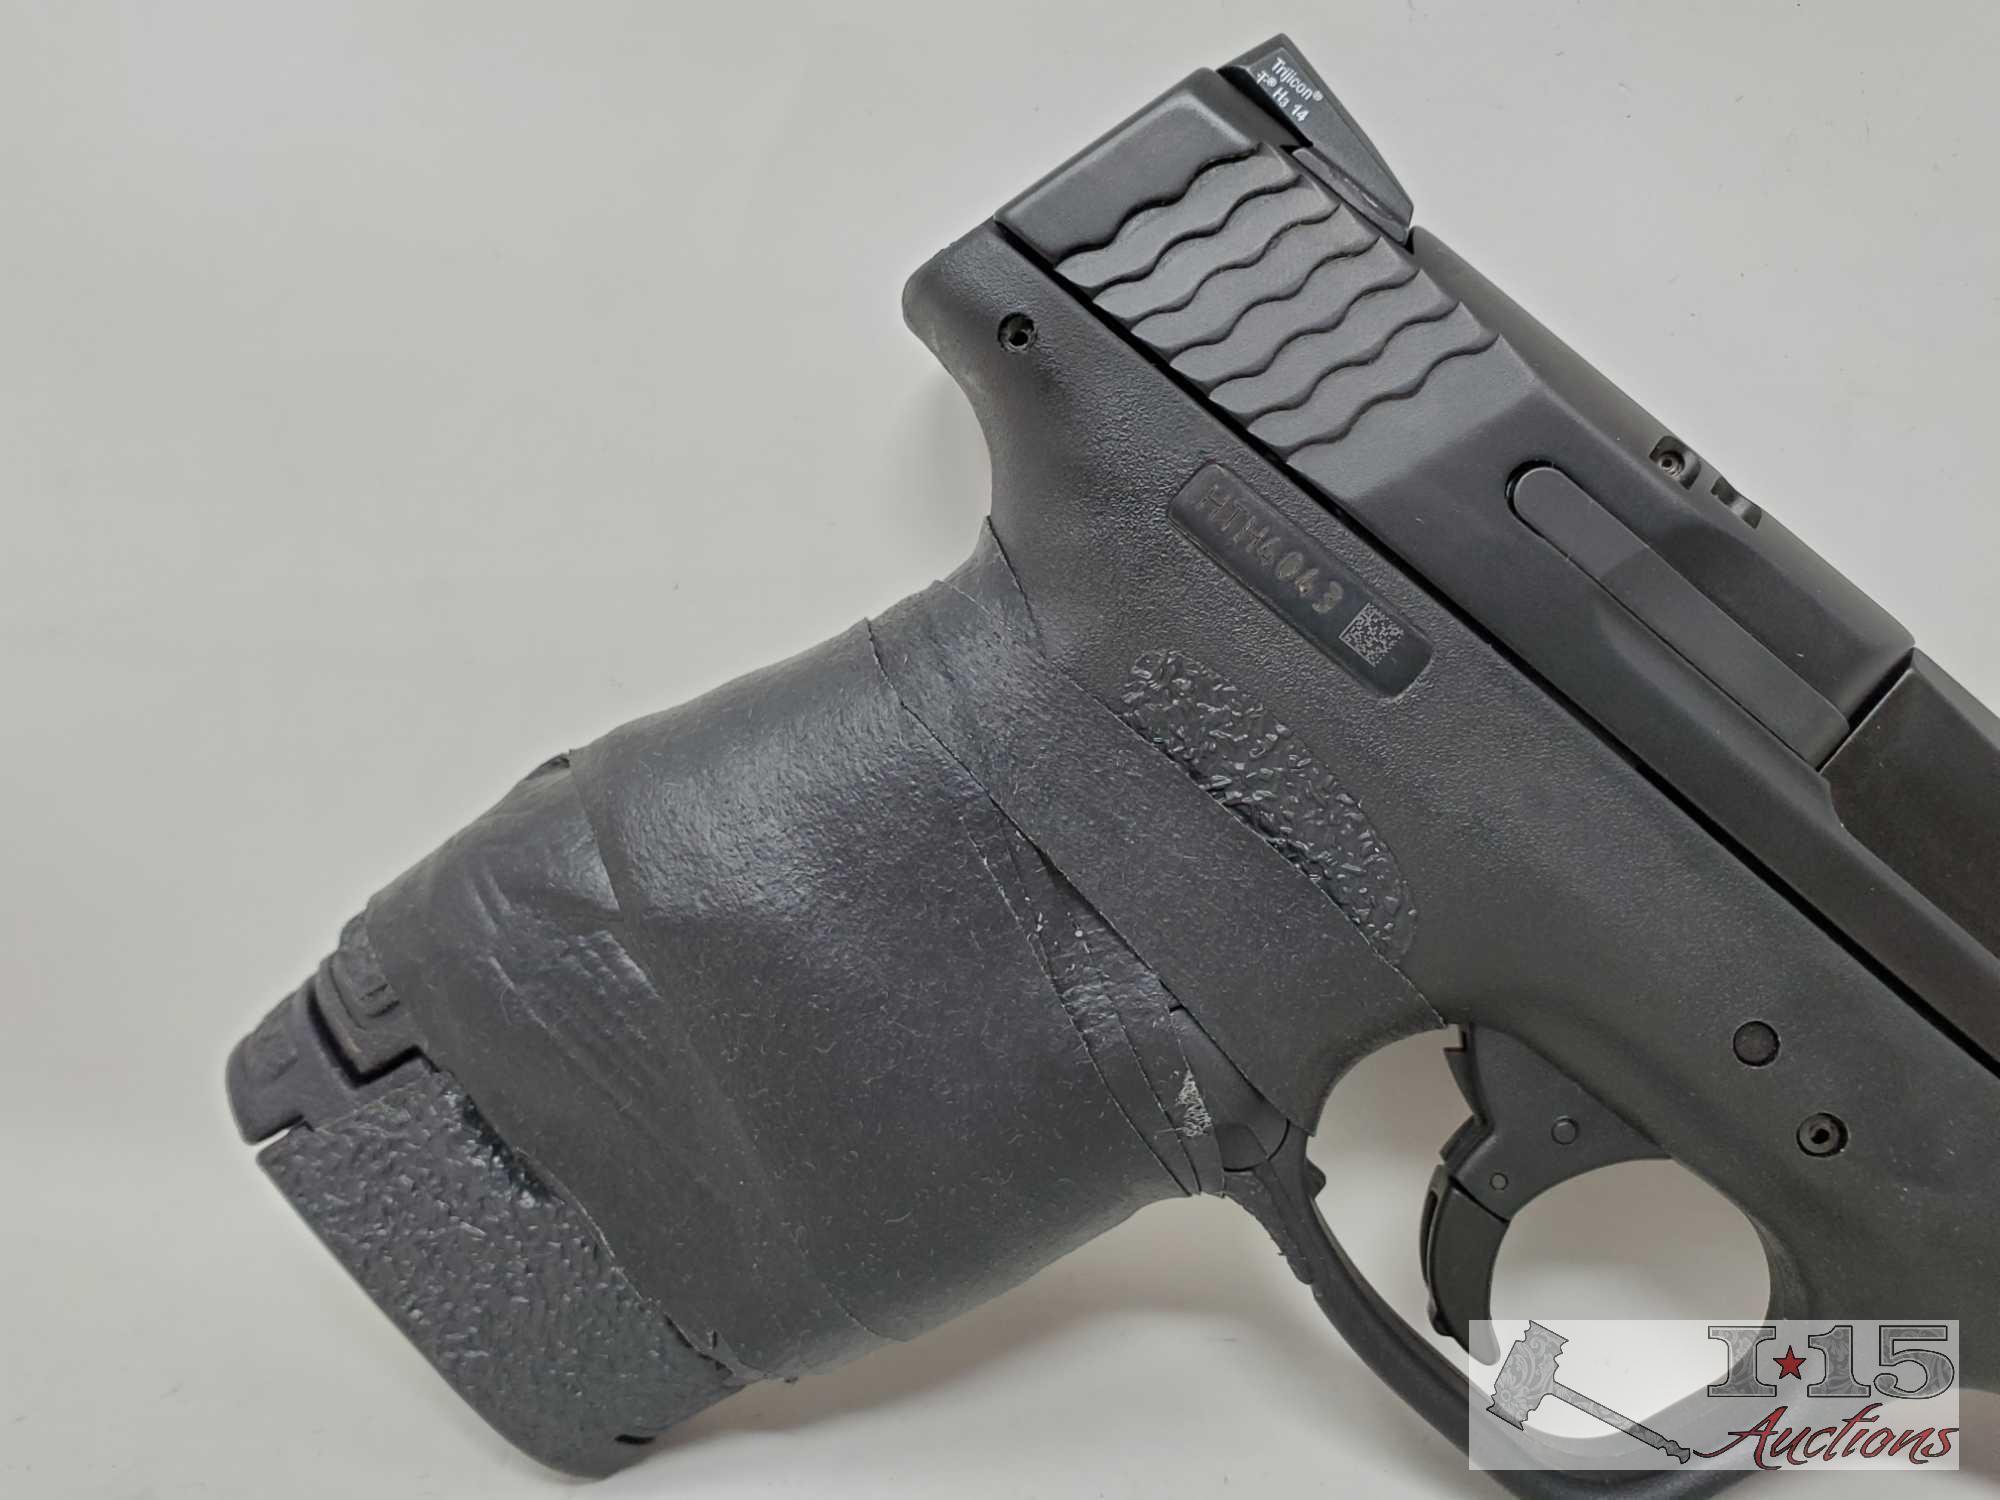 Smith & Wesson M&P 9 Shield 9mm Semi-Auto Pistol with Magazine and Box